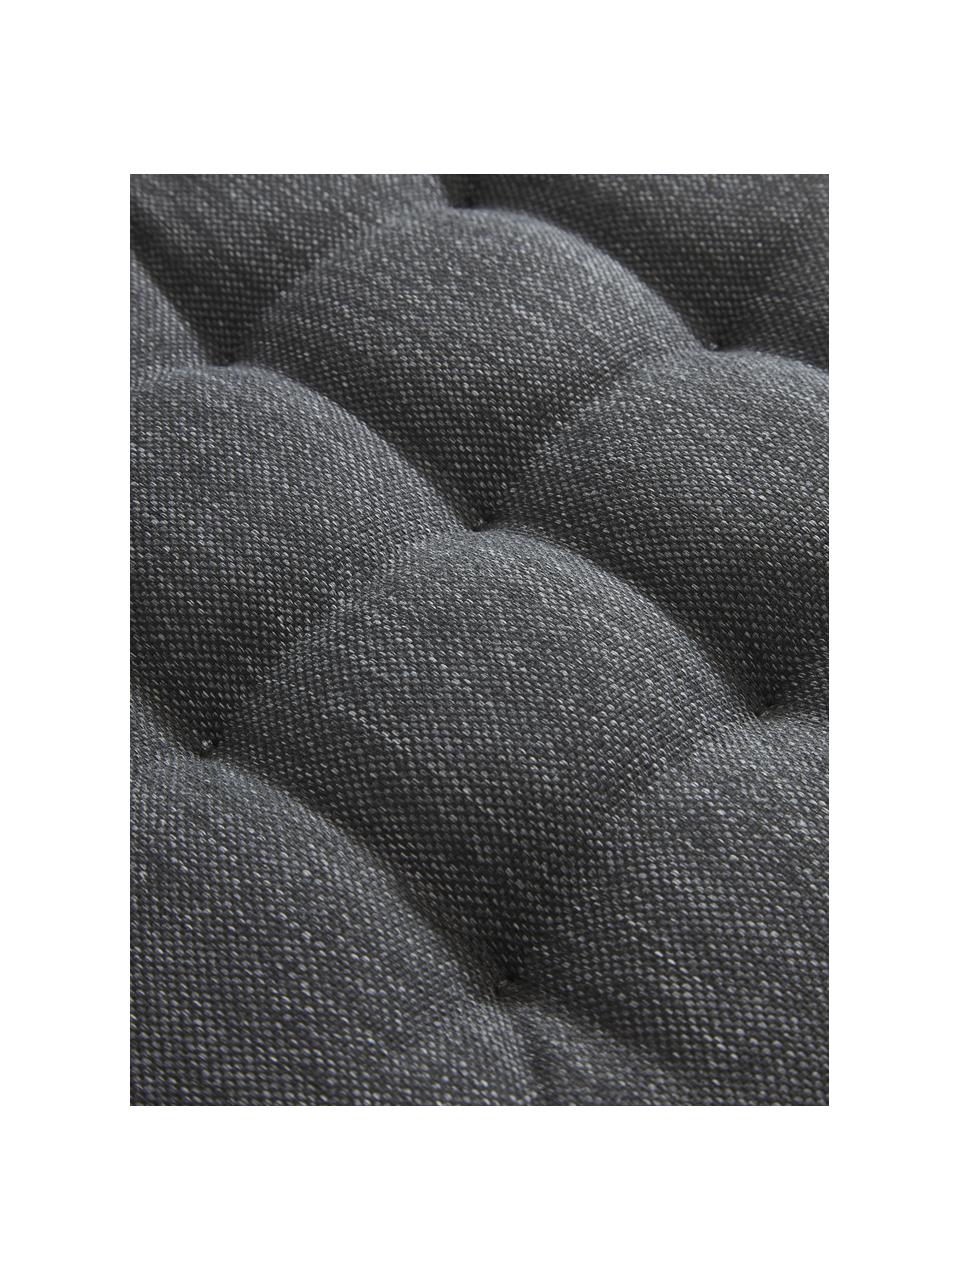 Coussin de chaise d'extérieur gris foncé Olef, 100 % coton, Gris foncé, larg. 40 x long. 40 cm